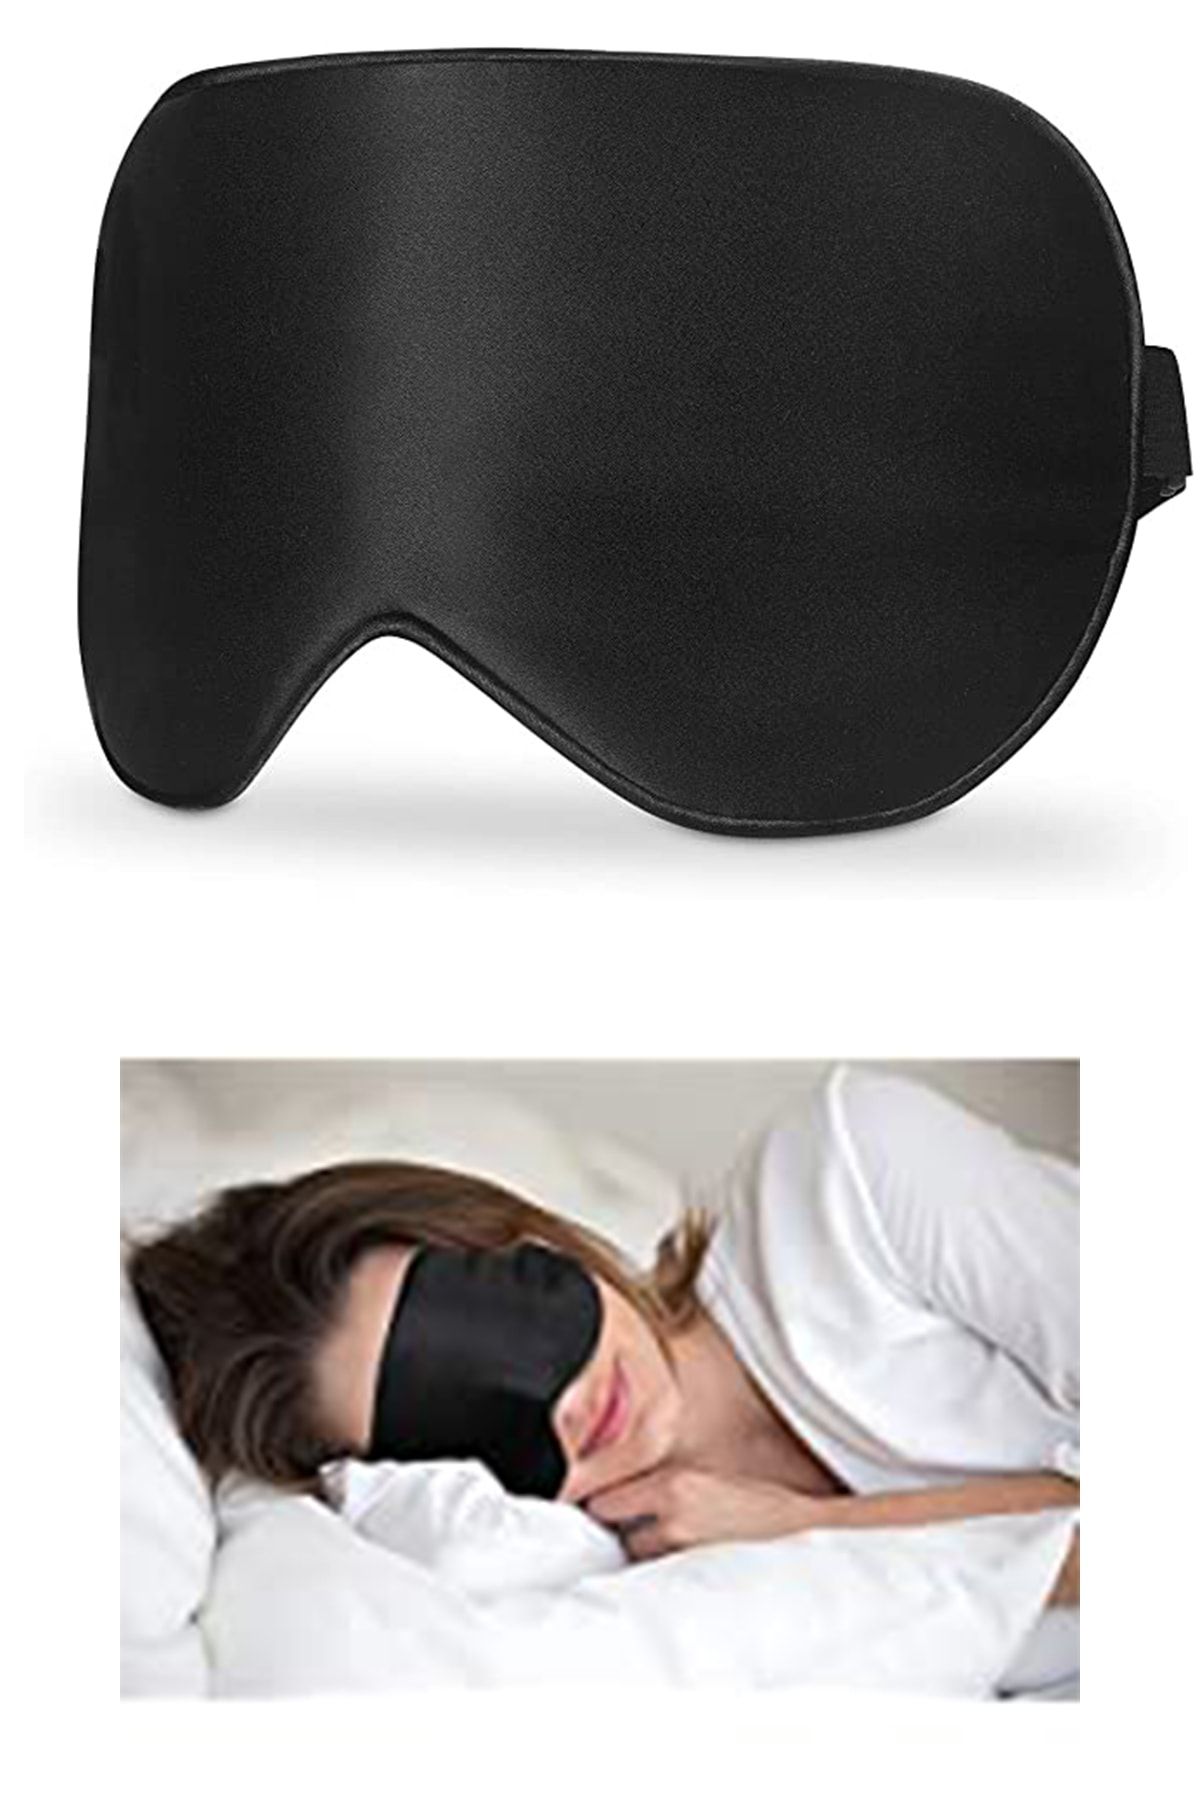 minufco Işık Önleyici Uyku Göz Bandı Maskesi Işık Önleyici Gözlük Maske Seyahat Uyku Göz Maskesi